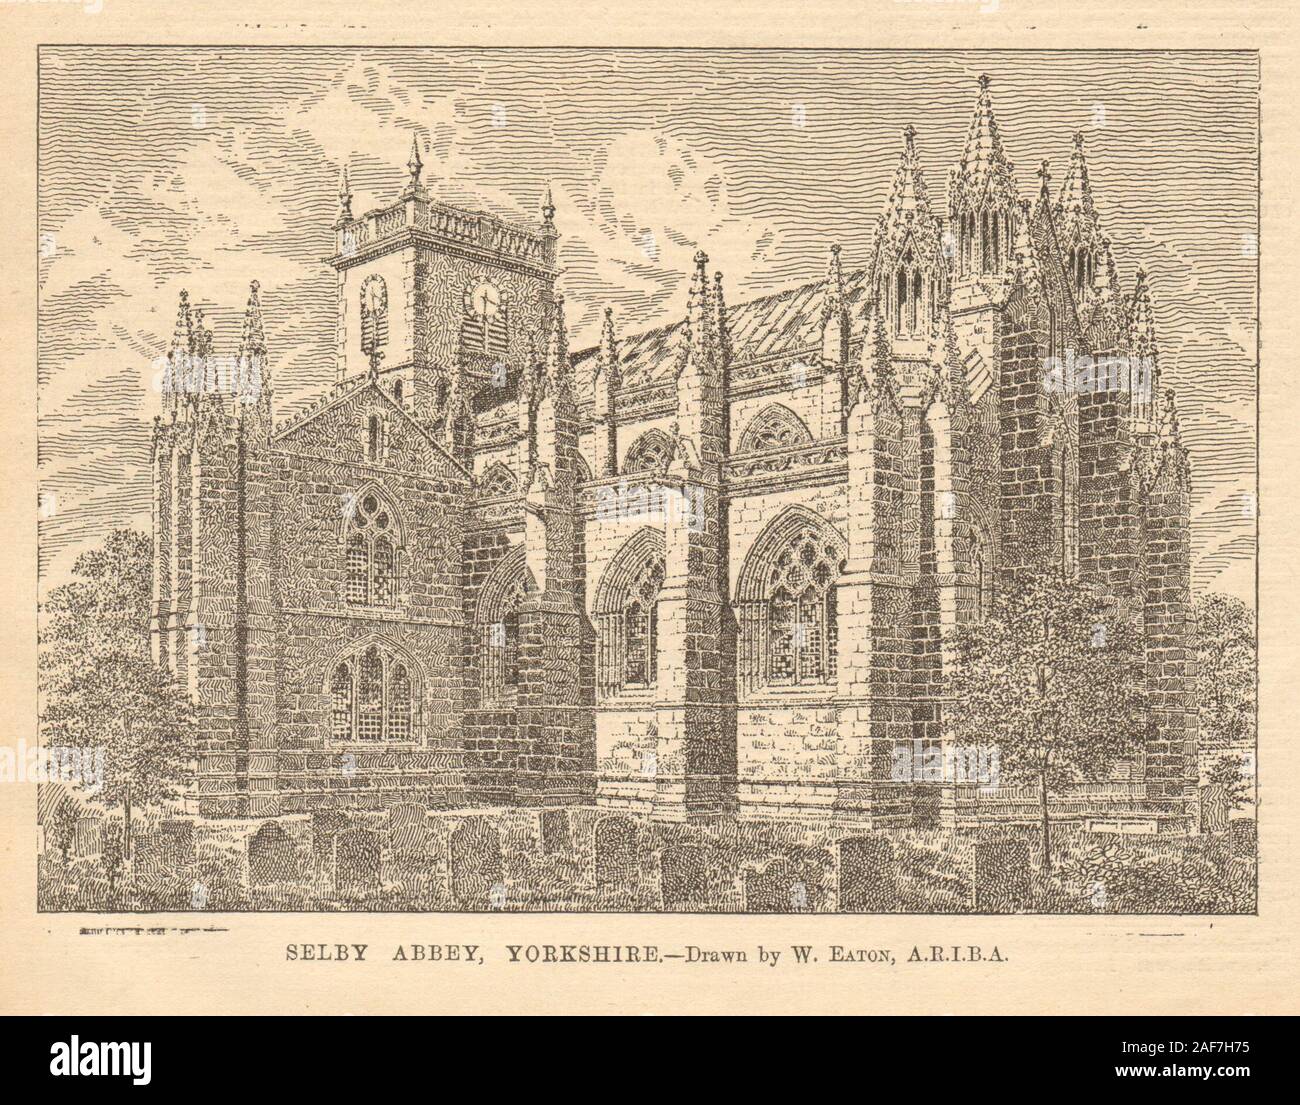 Selby Abbey, dans le Yorkshire. - Dessiné par W. Eaton, A.R.I.B.A. 1905 vieux ancien Banque D'Images